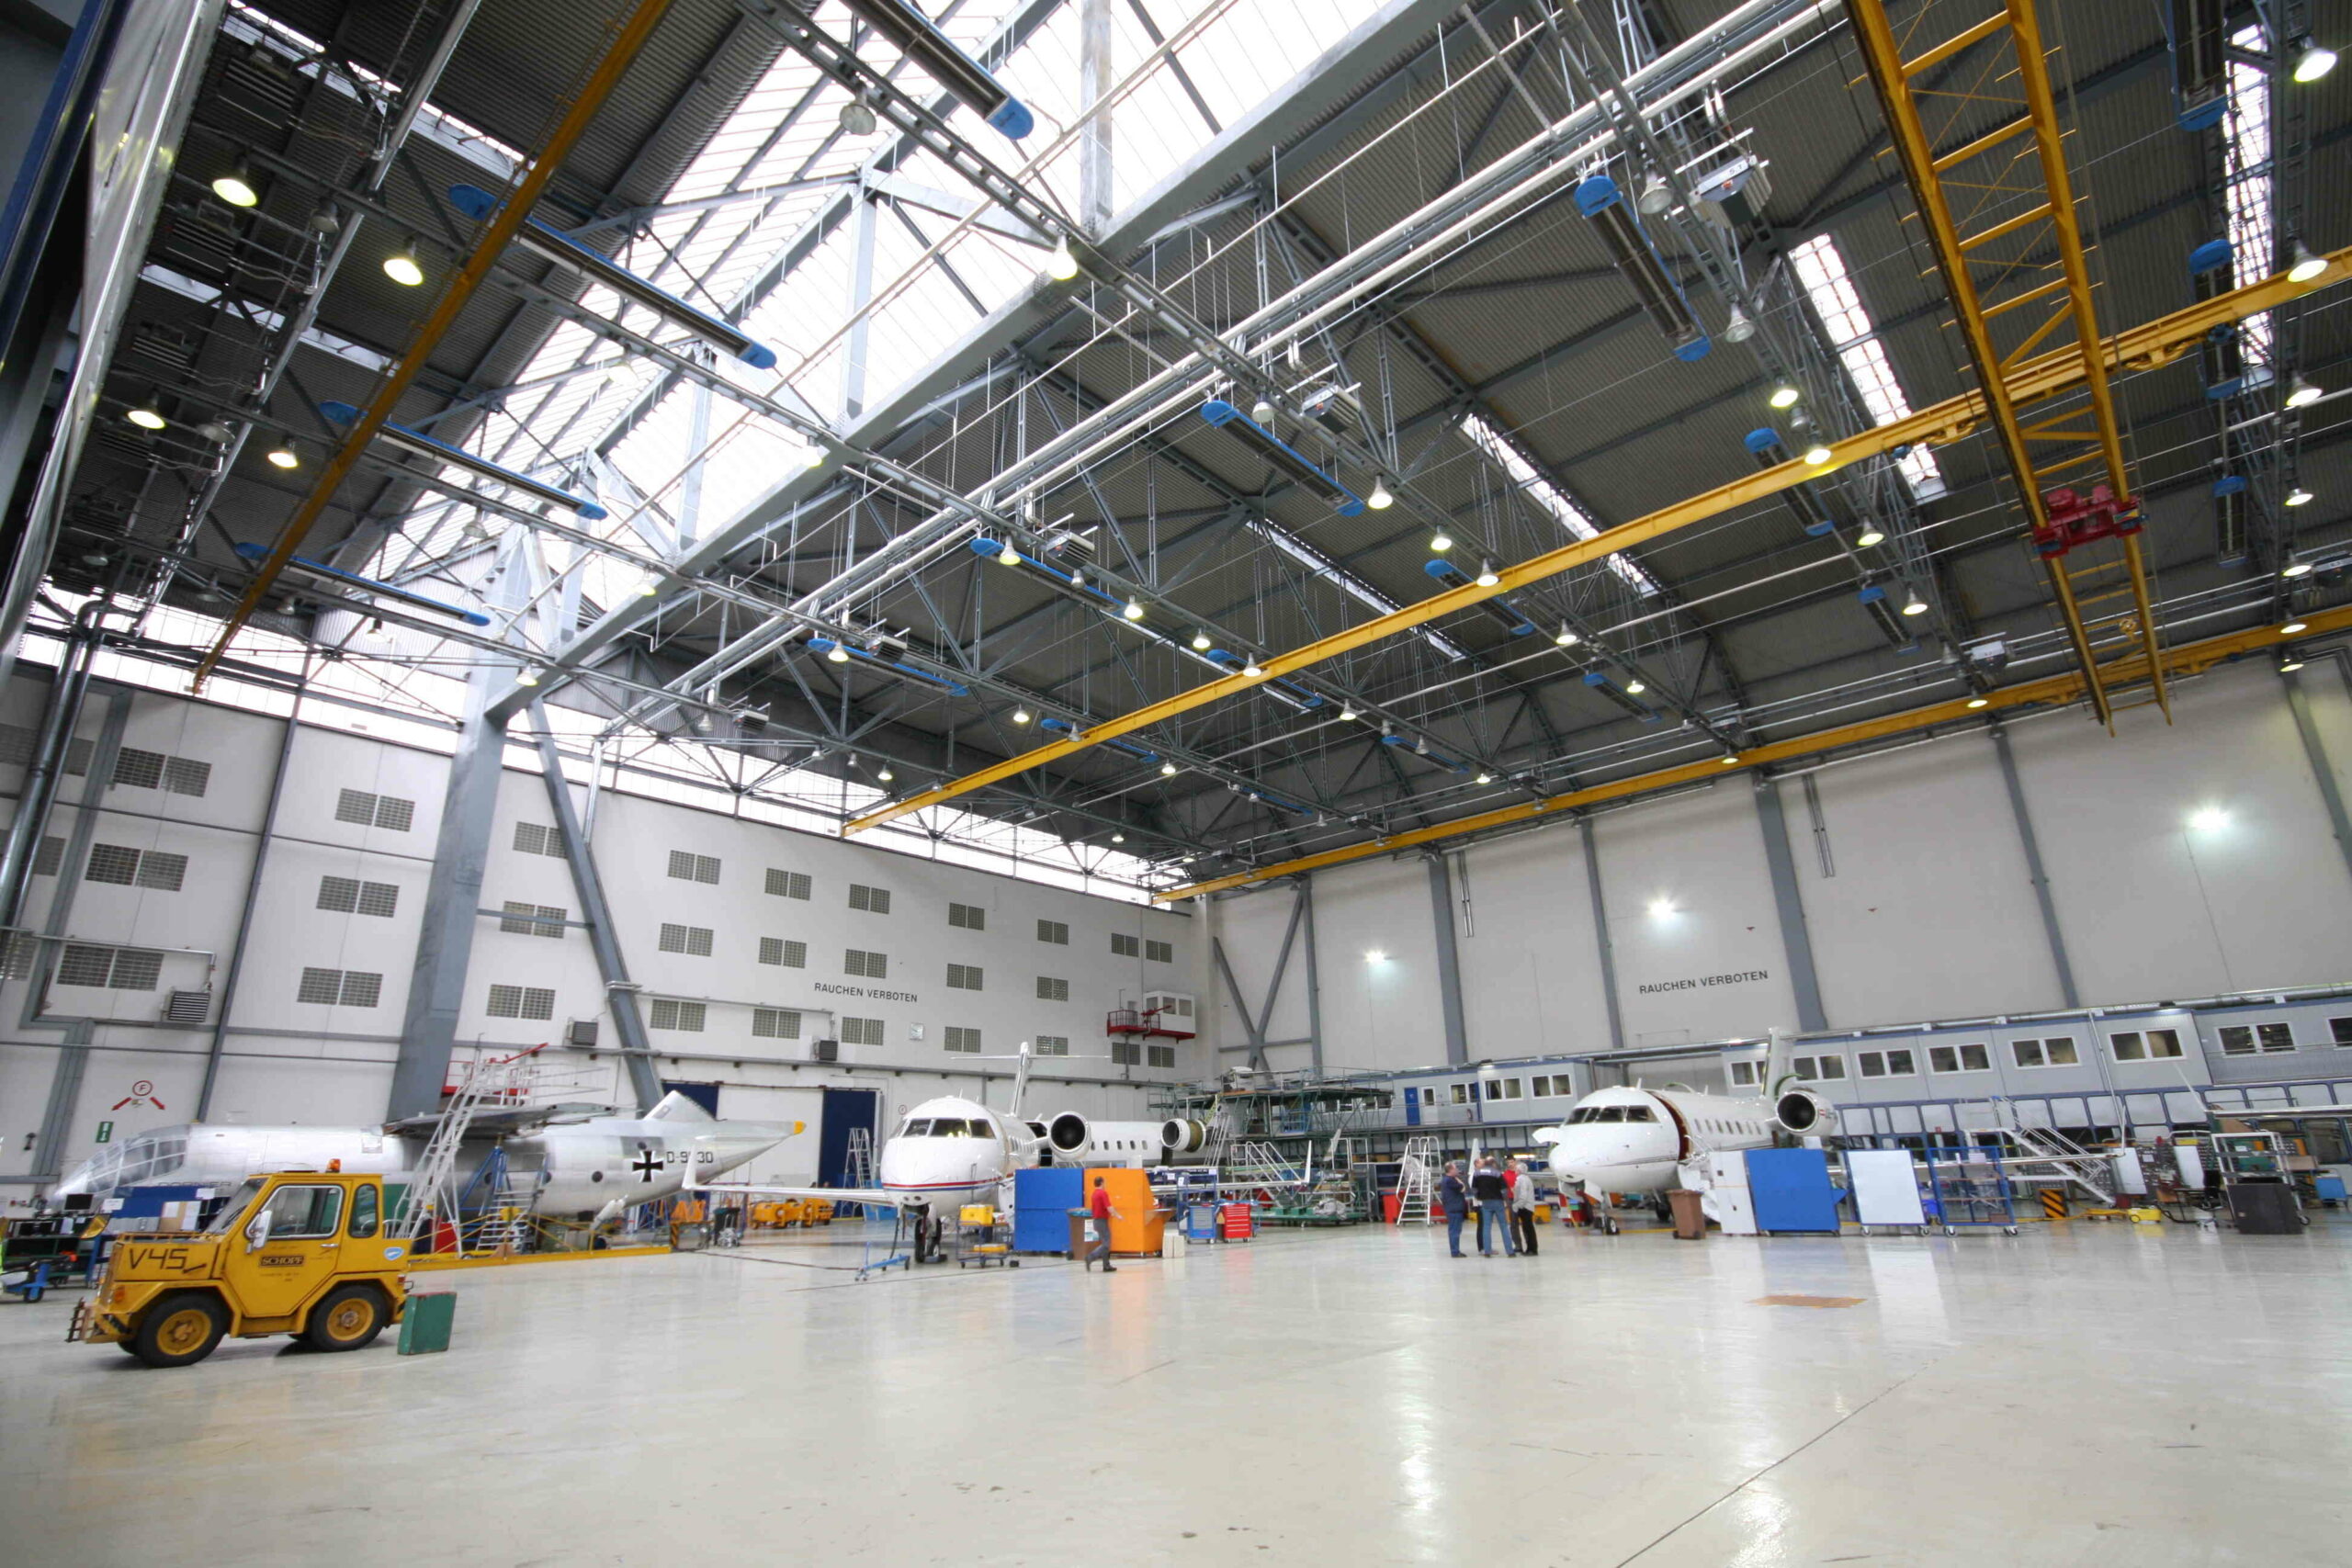 Halle der Firma RUAG mit Flugzeugen, die energieeffizient durch eine Infrarotheizung der Firma KÜBLER GmbH erwärmt wird.